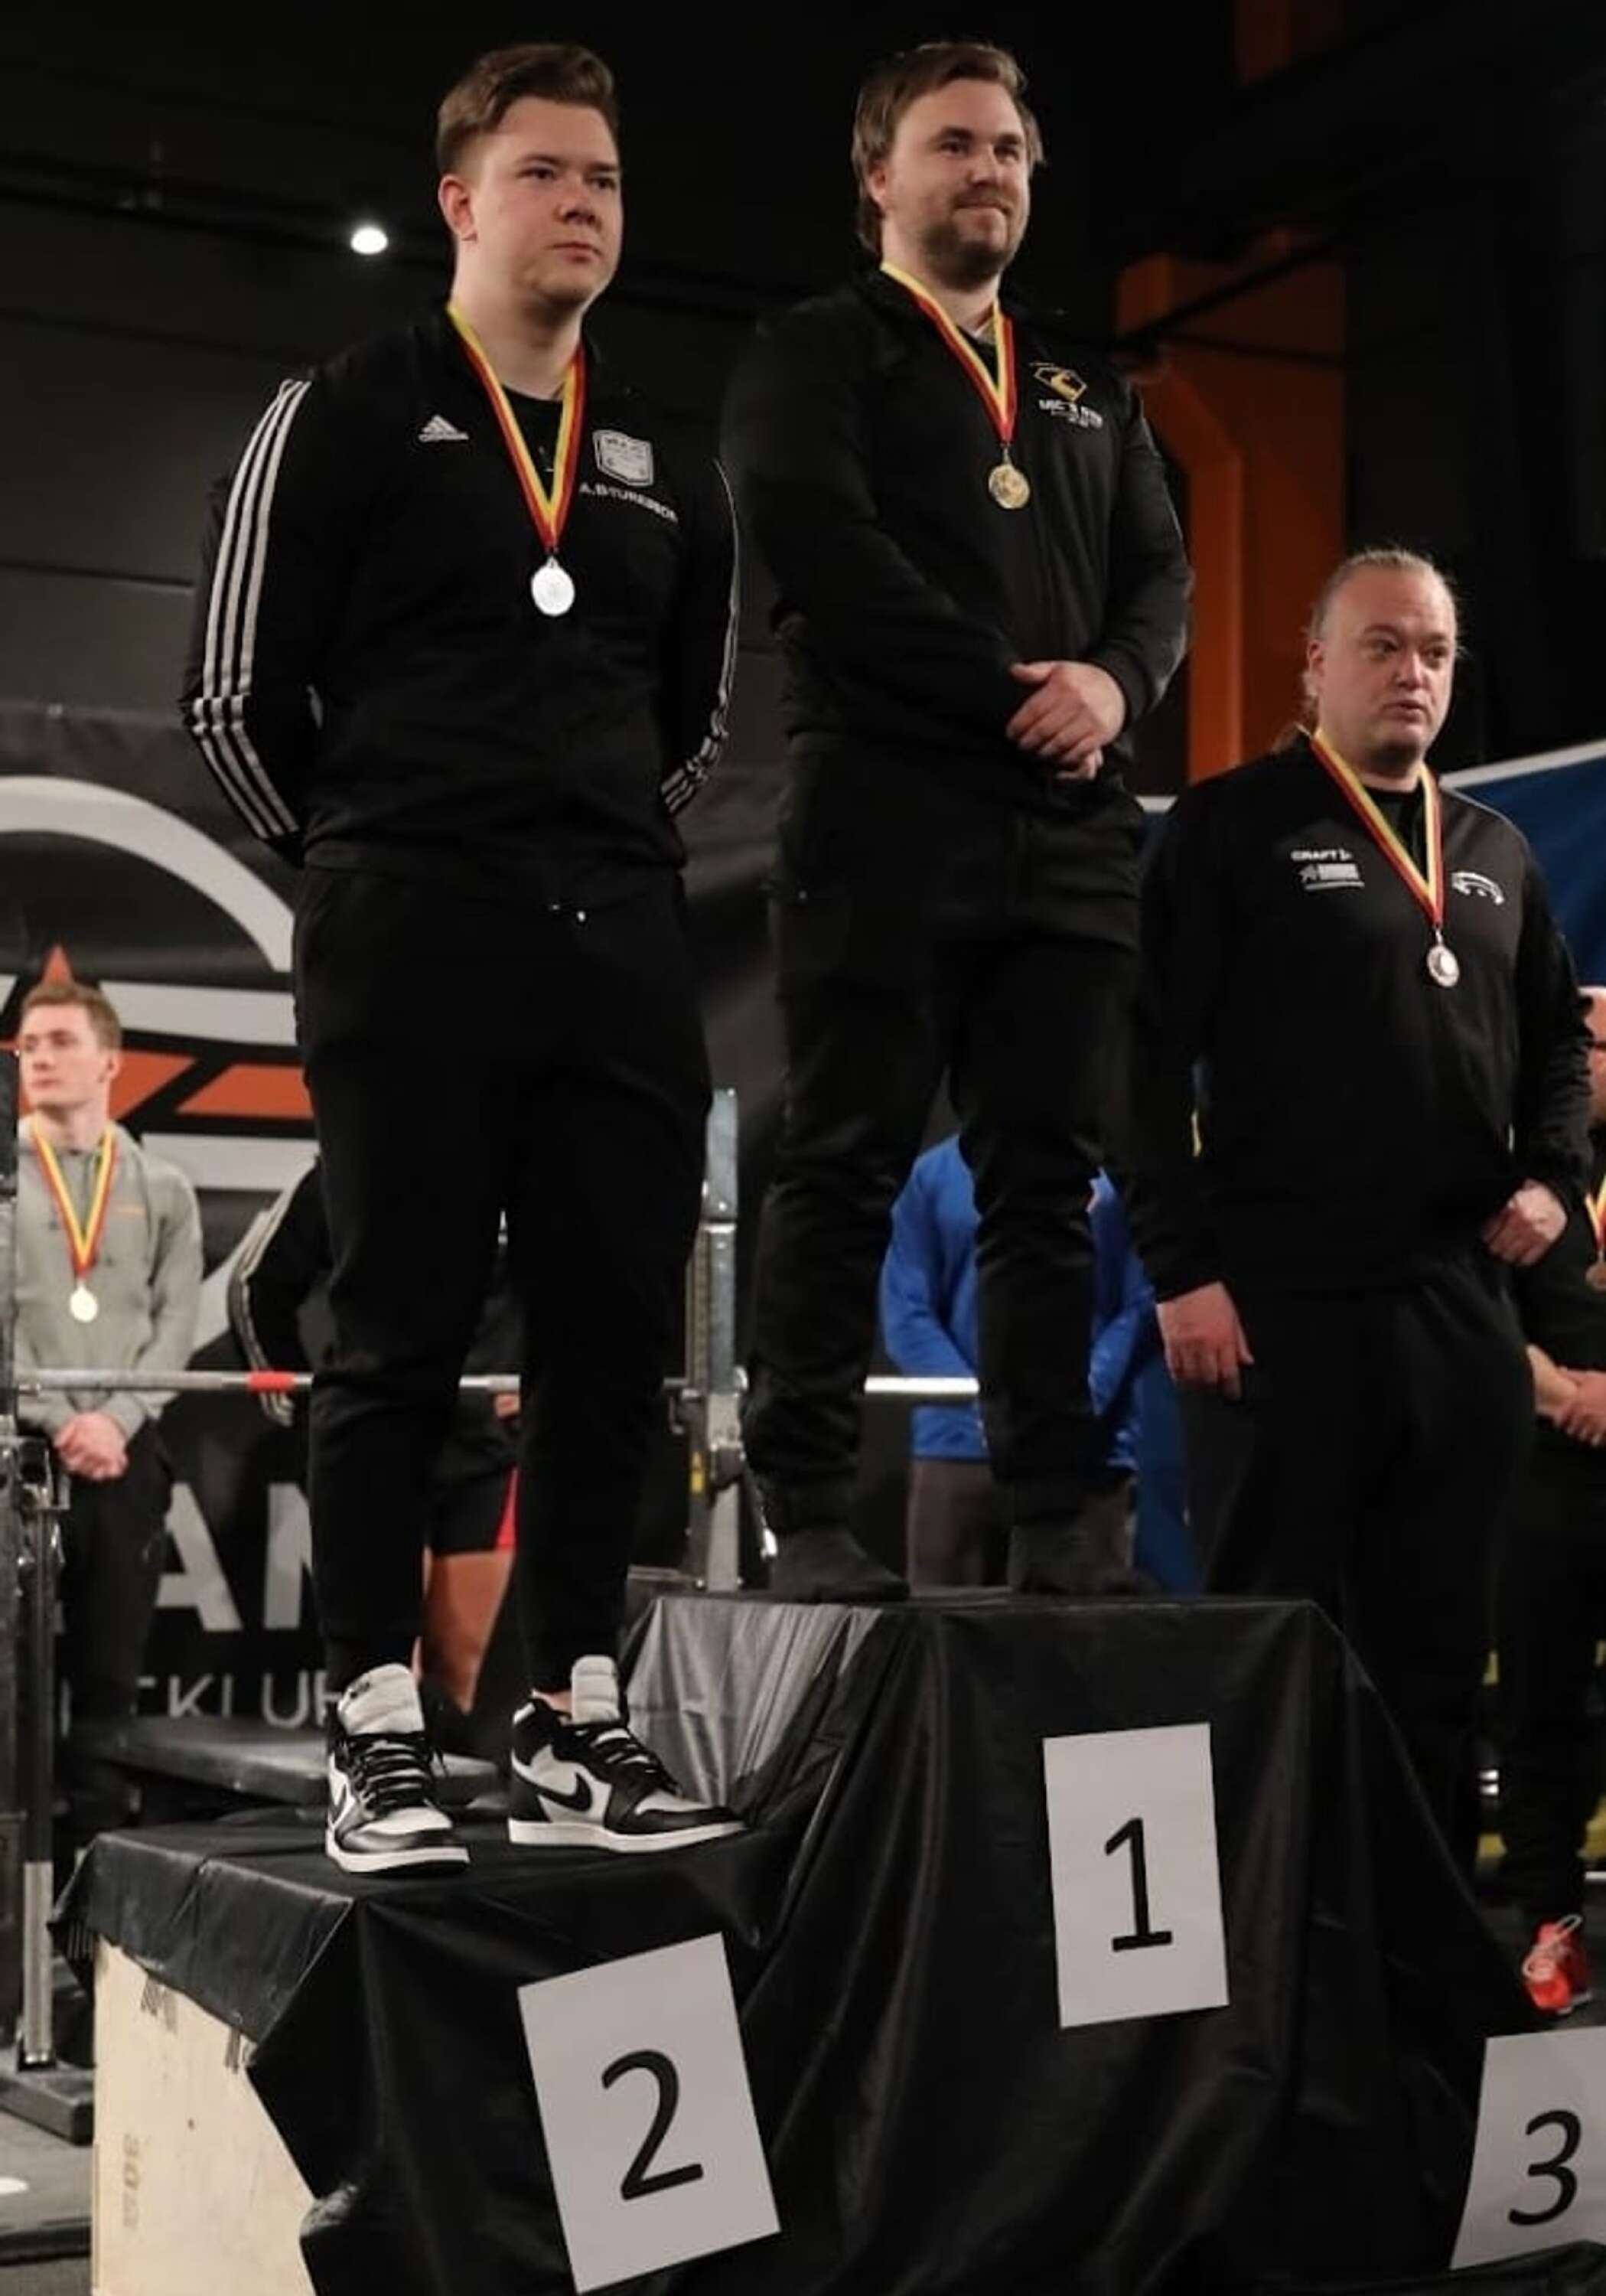 I -105 kilosklassen tog Lukas Svensson guldet med nytt personbästa på 202,5 kilo.